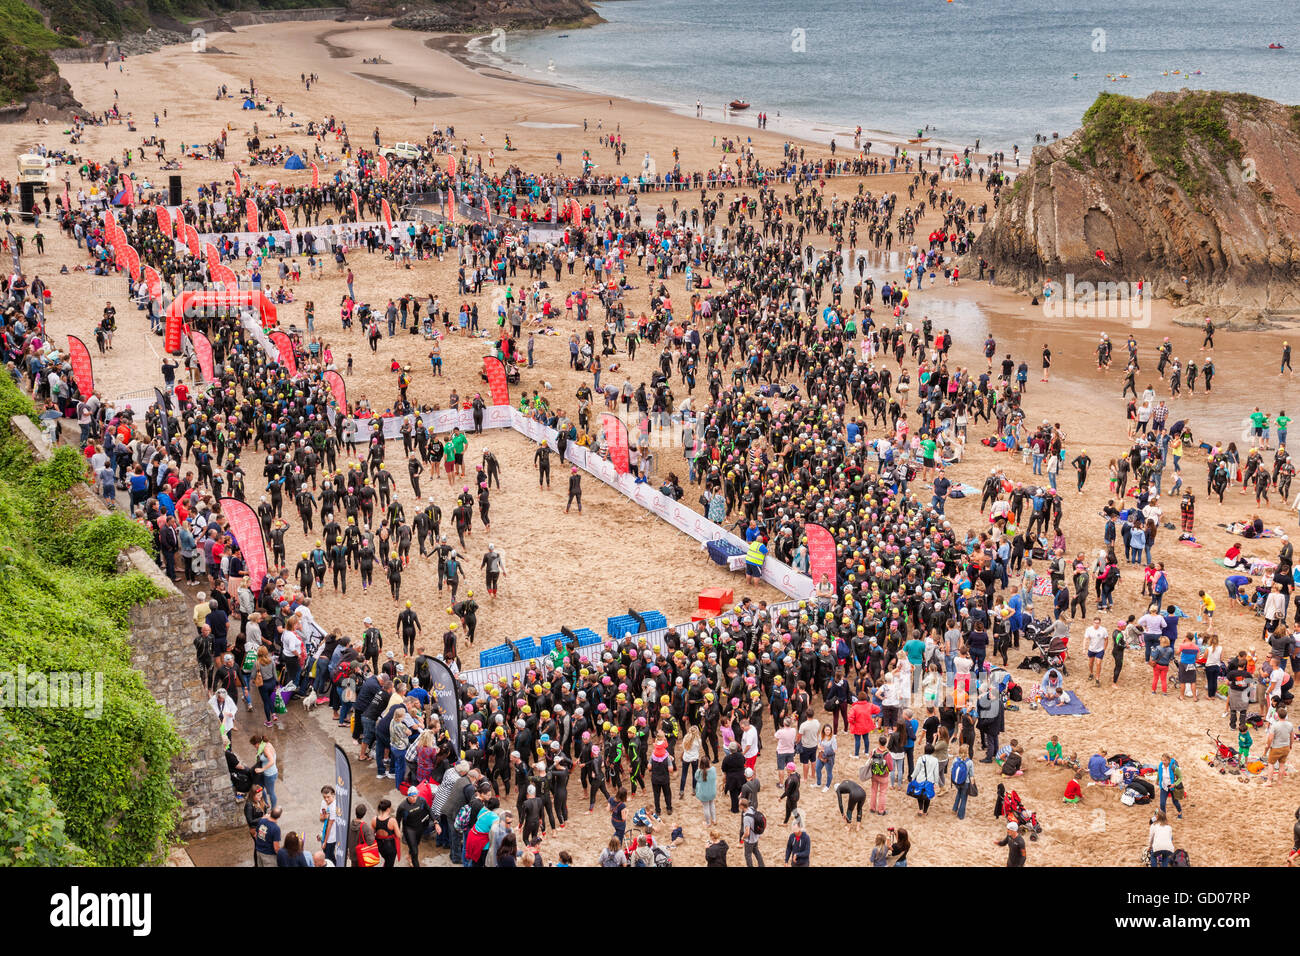 2100 nuotatori si riuniscono per il primo evento del Galles lungo Corso Weekend a Tenby, Pembrokeshire, Wales, Regno Unito Foto Stock